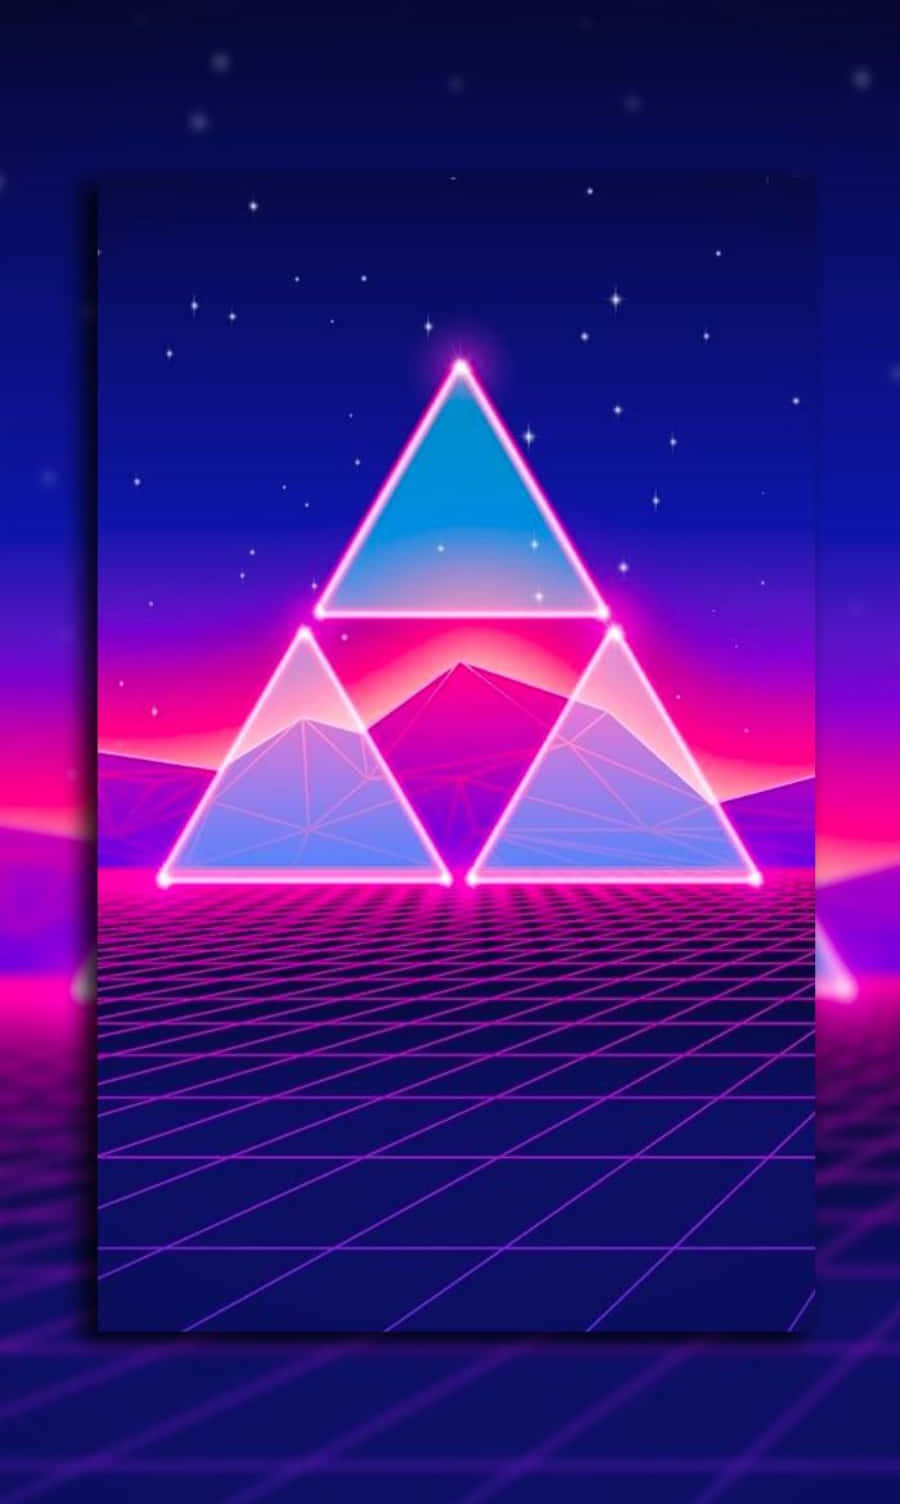 Triángulostriples De Los Años 80 De Vaporwave Fondo de pantalla